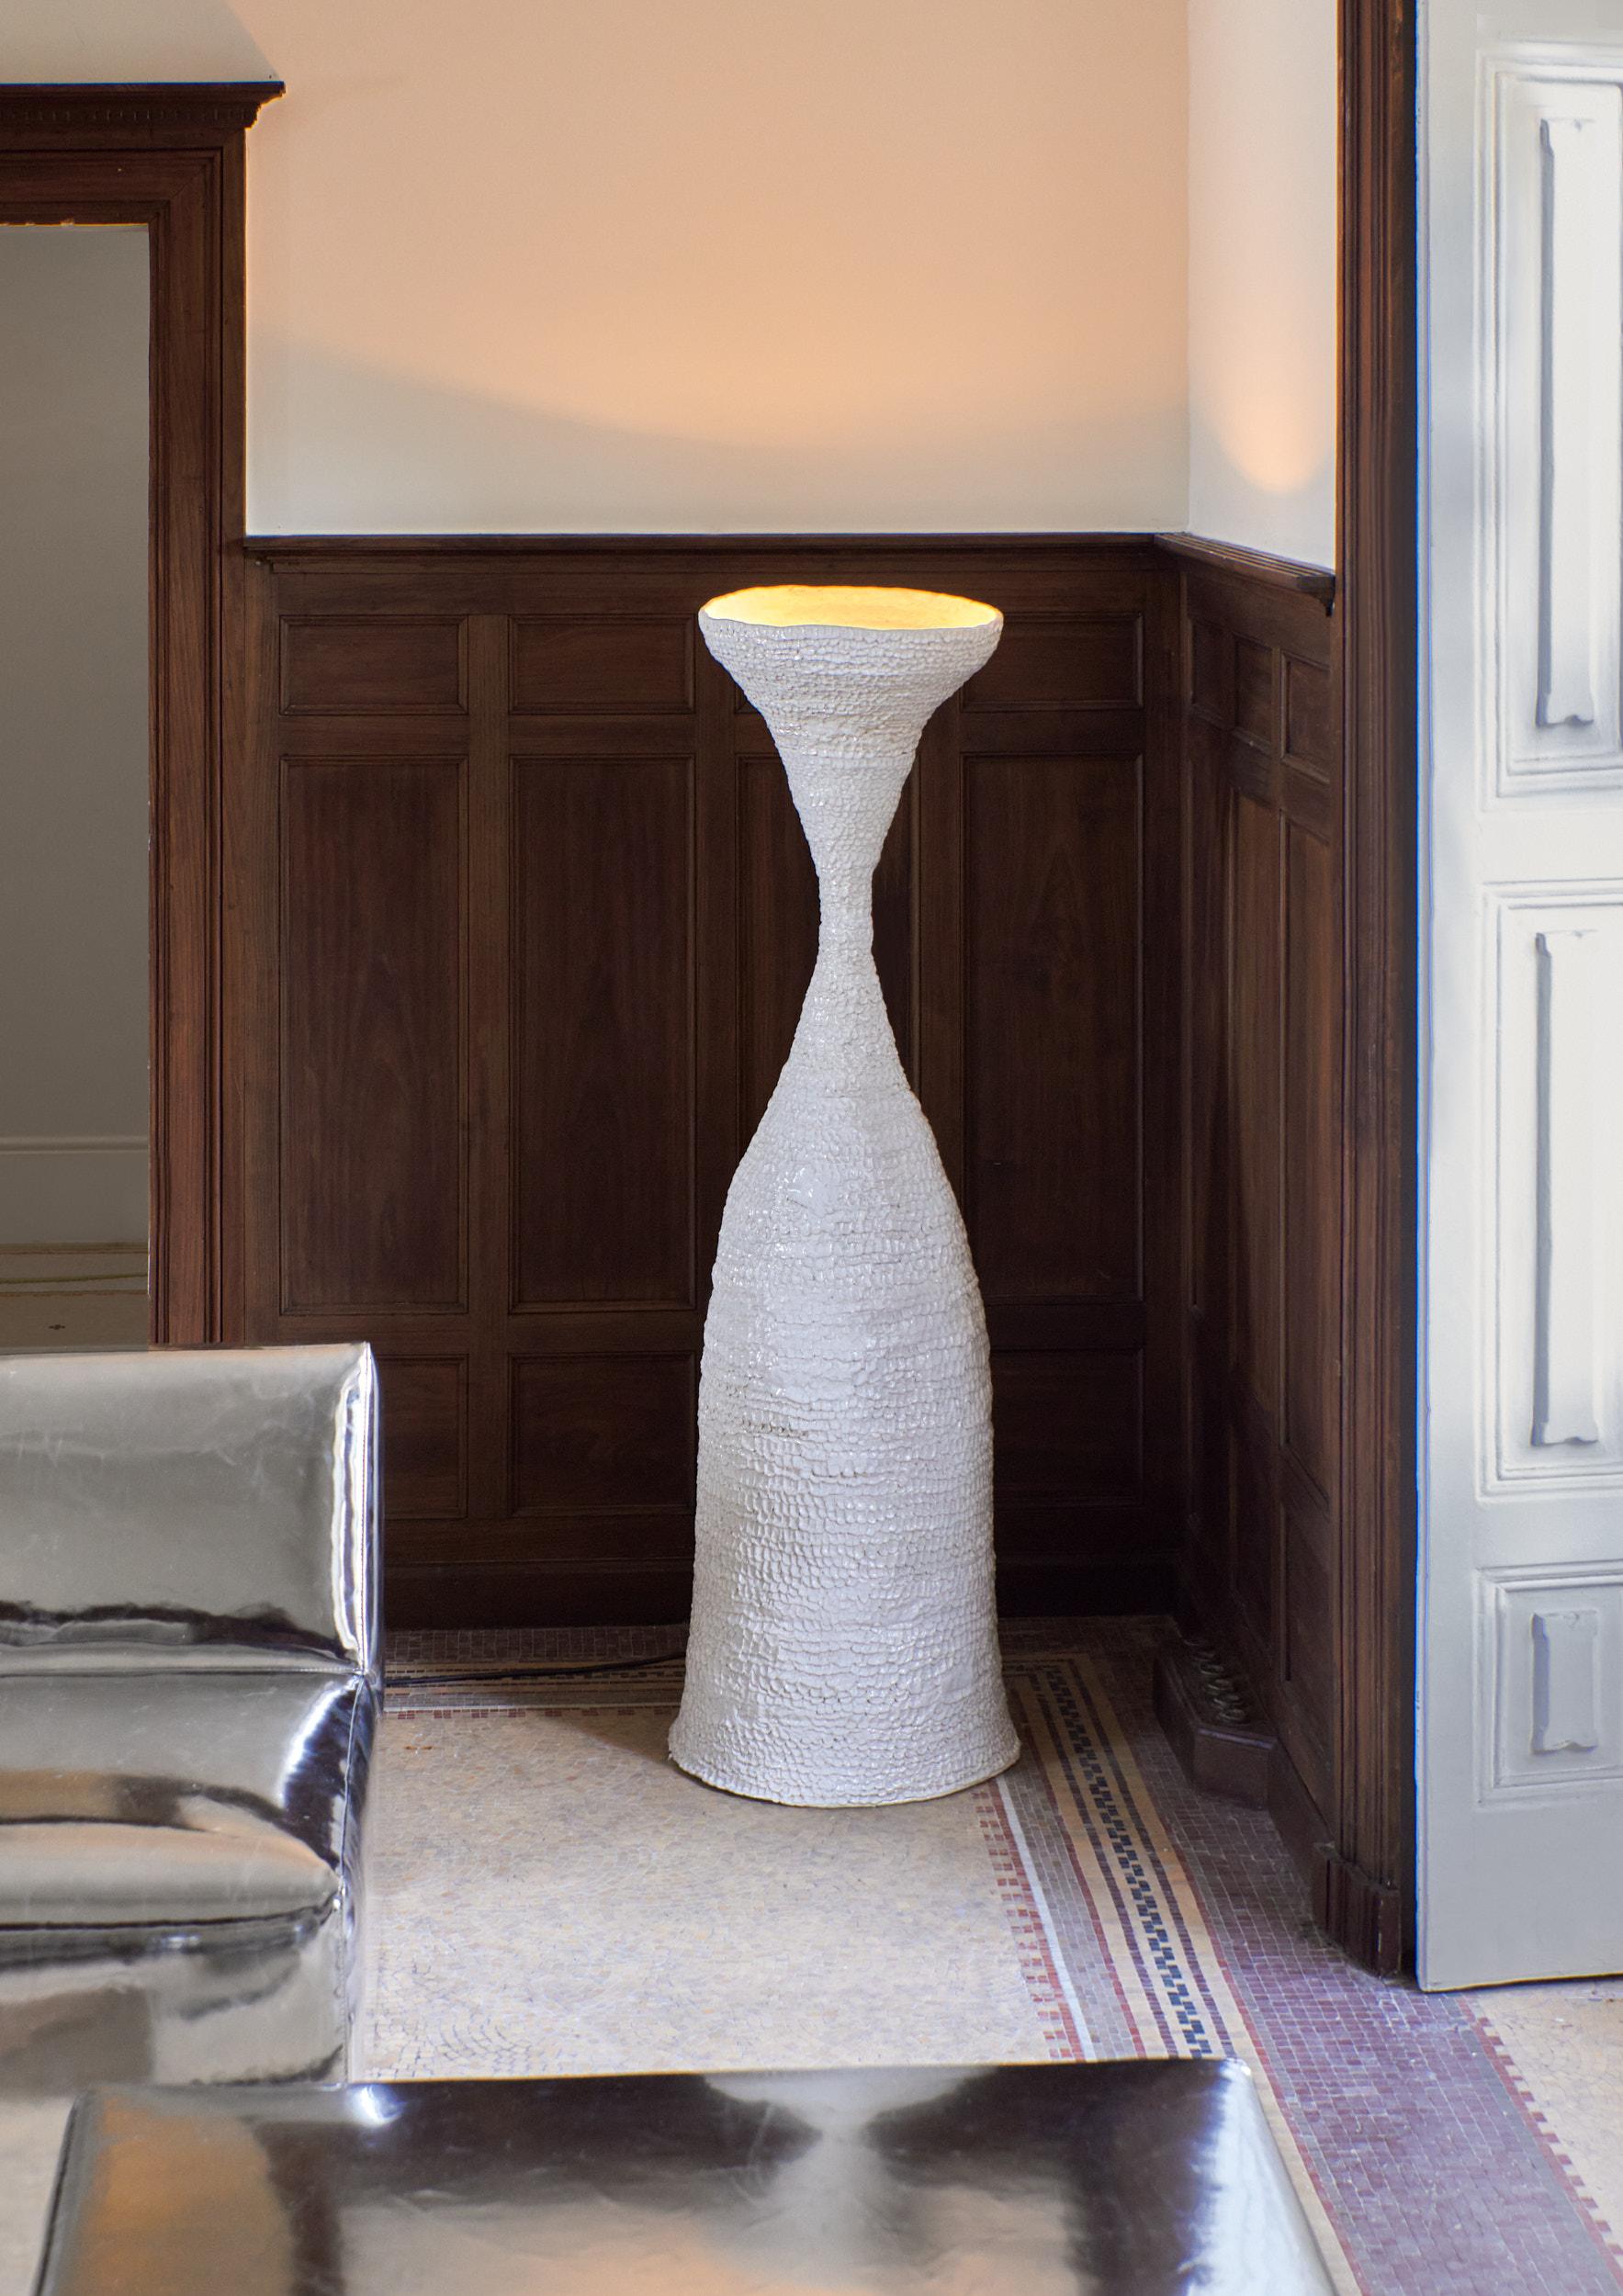 Casa Stehlampe in weiß
Entworfen von Projekt 213A im Jahr 2023

Große, handwerklich hergestellte Keramik-Stehleuchte mit strukturierter Oberfläche, hergestellt in der Keramikwerkstatt von project 213A.
Jedes Stück ist aufgrund seiner handgefertigten